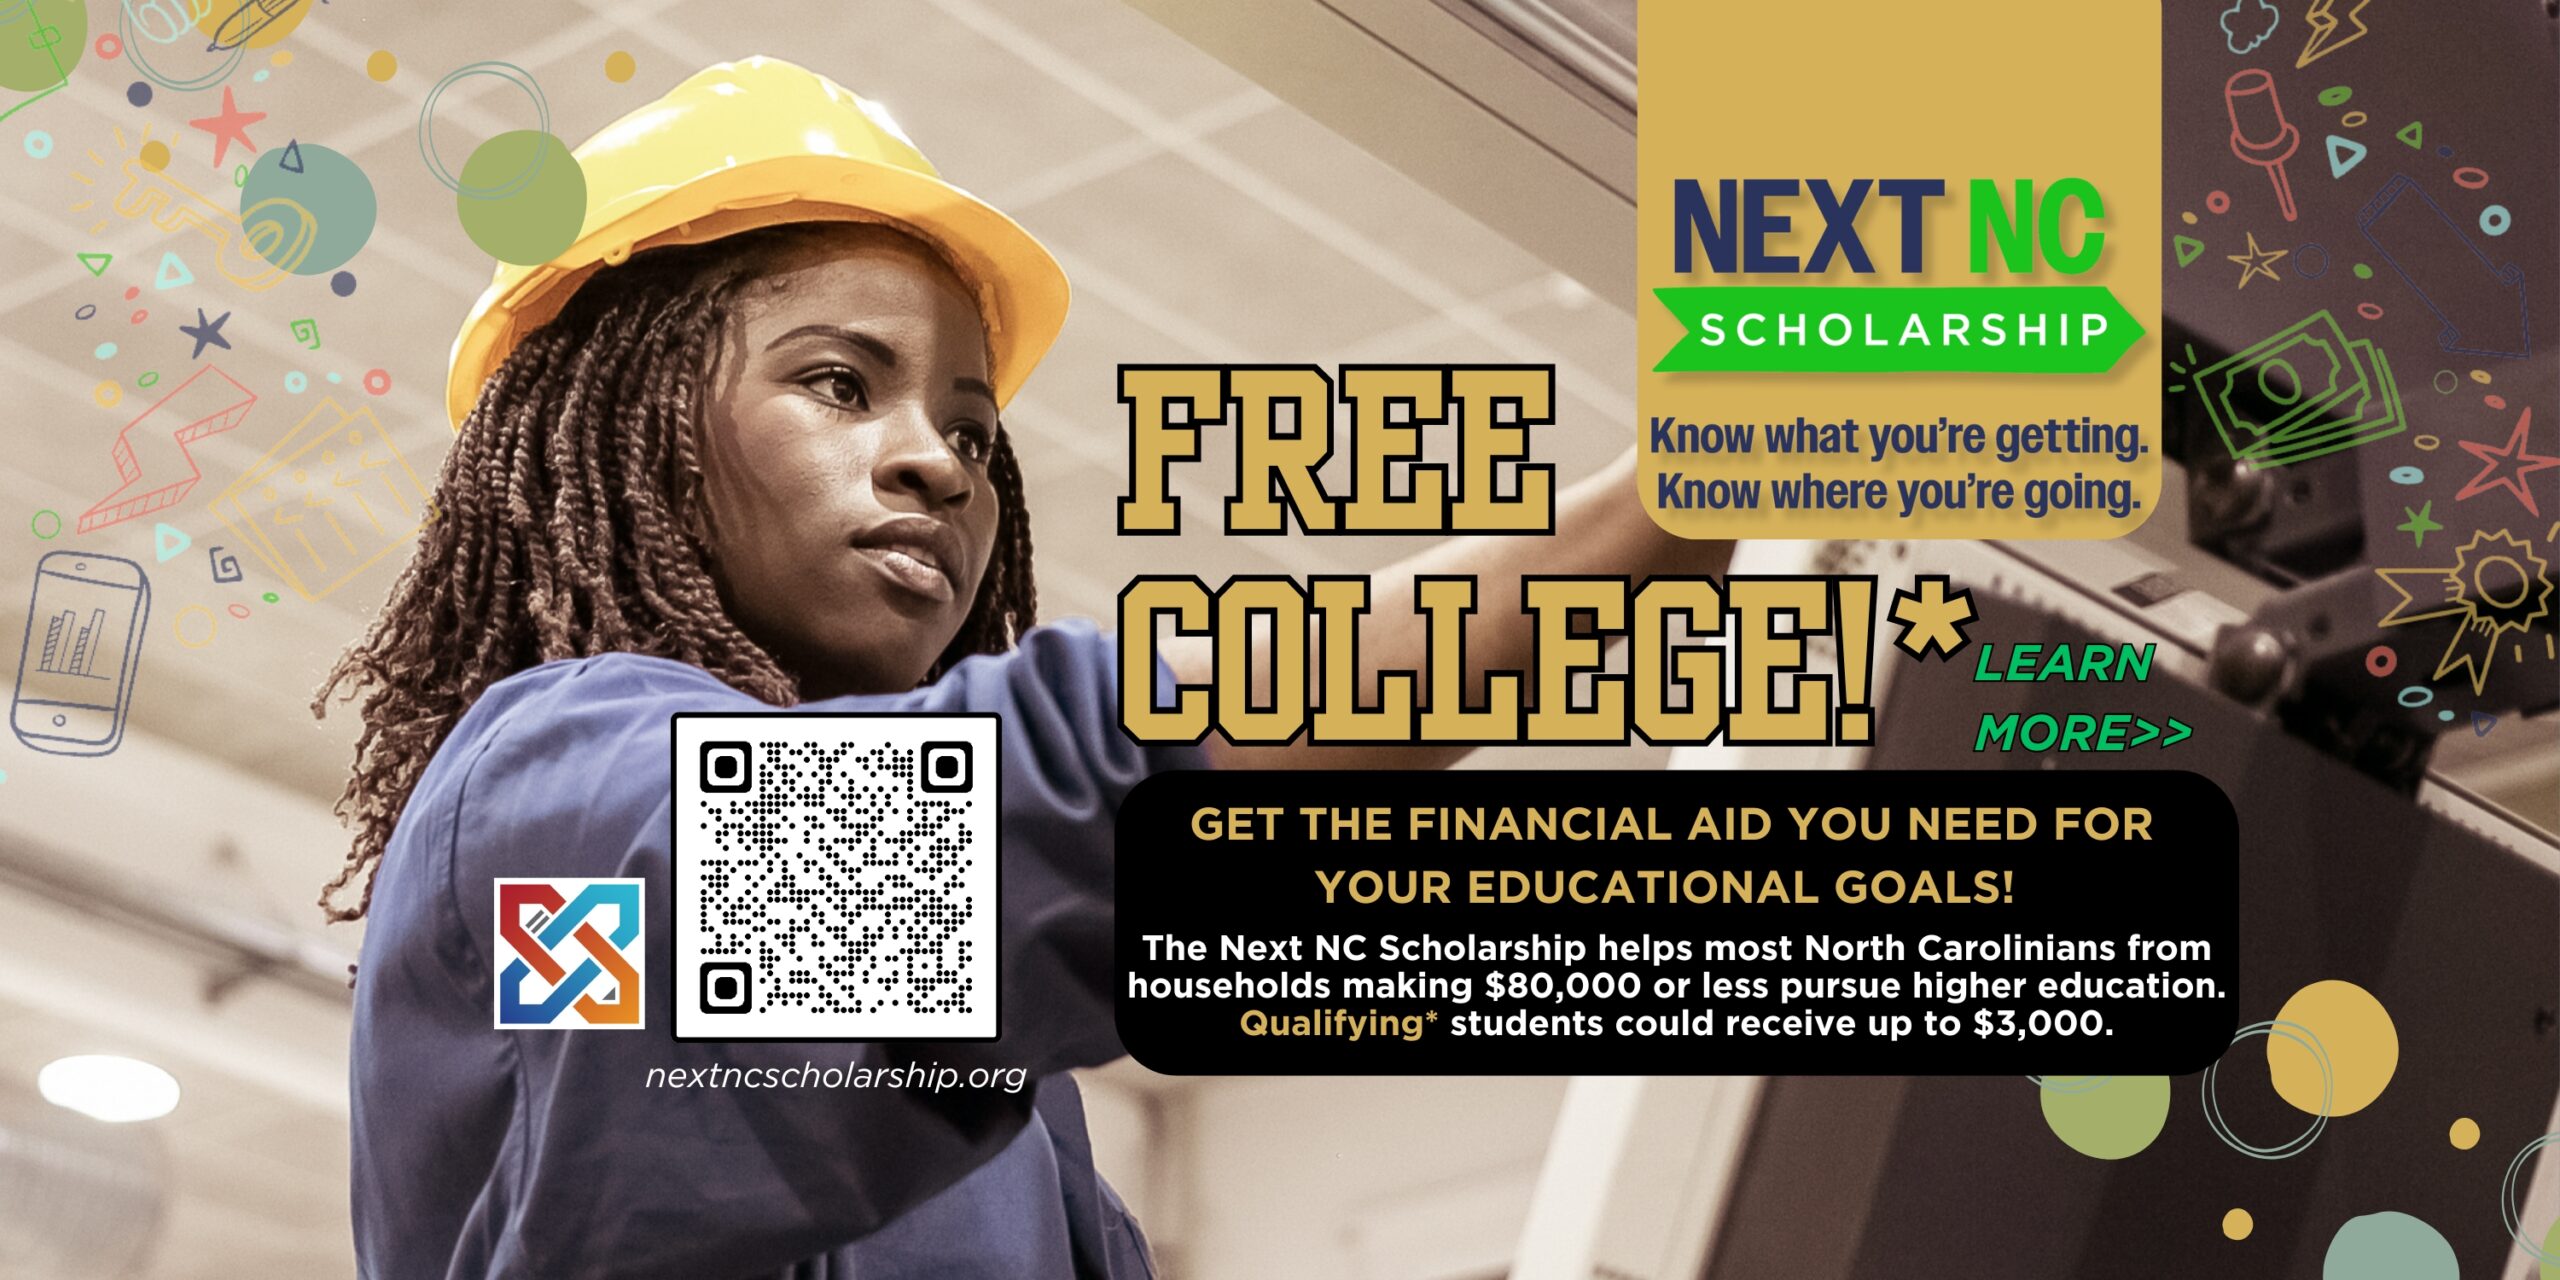 横幅上写着“Next NC 奖学金 - 了解您将获得什么。了解您将去往何处。| 免费大学！* 了解更多 - 获得实现教育目标所需的经济援助！| Next NC 奖学金帮助大多数家庭收入不超过 80,000 美元的北卡罗来纳州人接受高等教育。符合条件*的学生最多可获得 3,000 美元。”单击横幅或访问 nextncscholarship.org 了解更多信息。